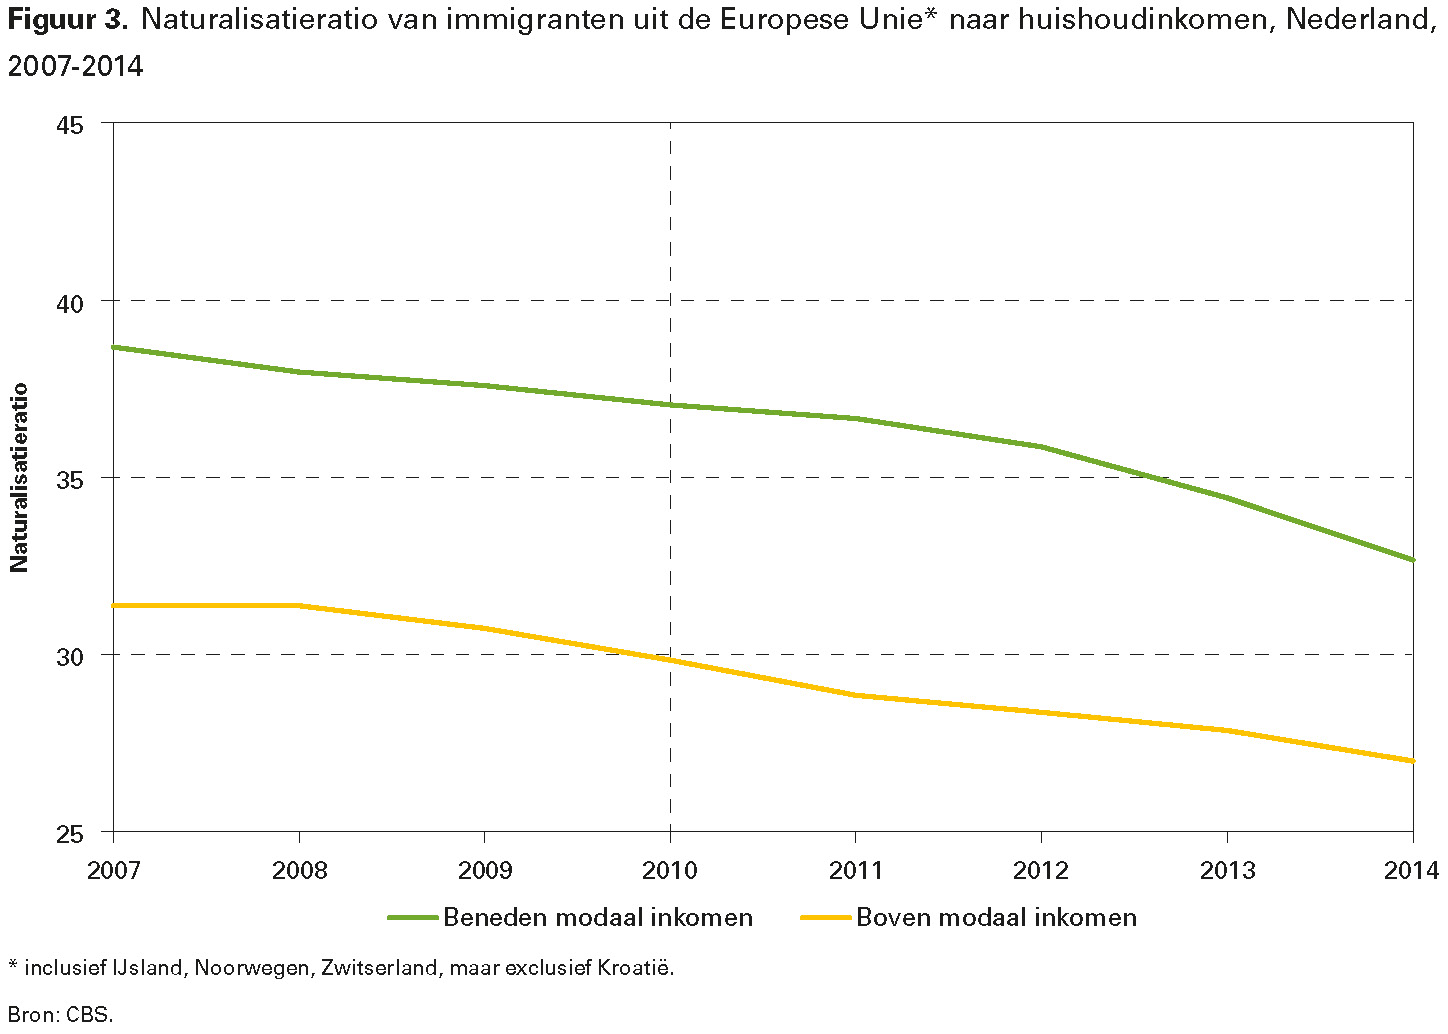 Figuur 3. Naturalisatieratio van immigranten uit de Europese Unie* naar huishoudinkomen, Nederland, 2007-2014